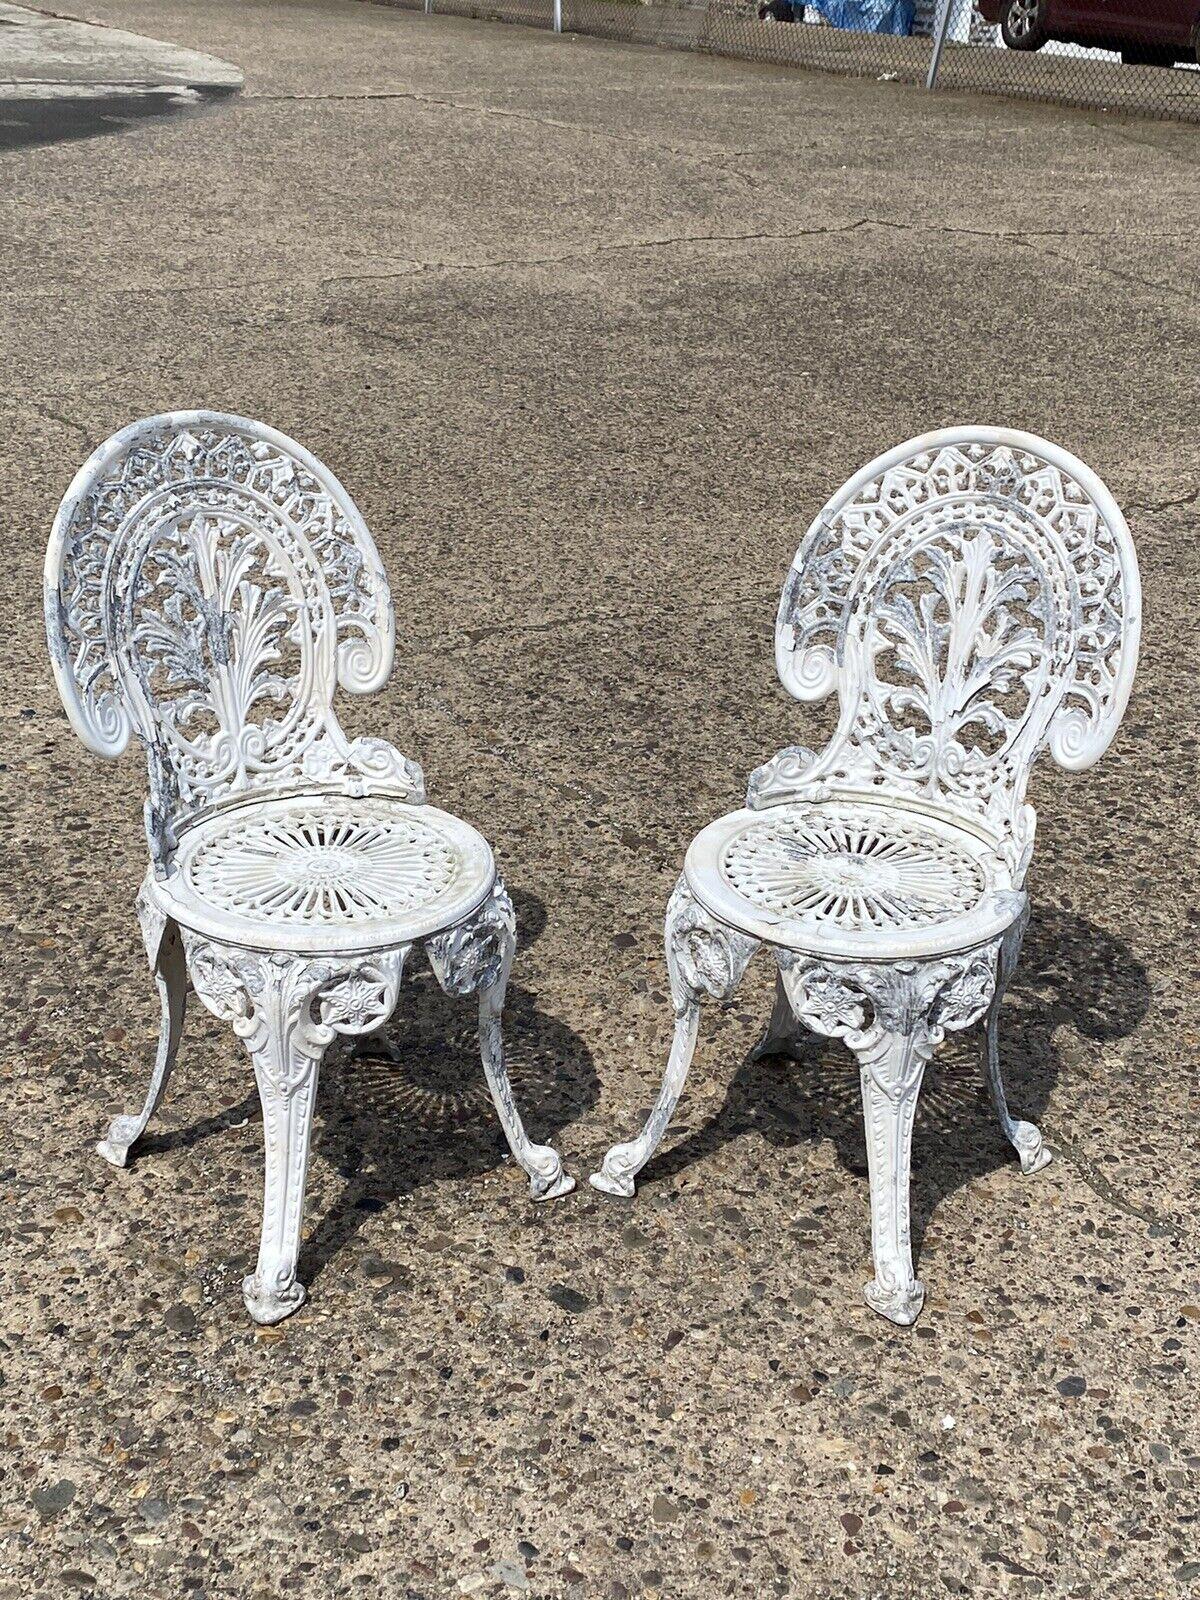 Petites chaises d'extérieur en fonte d'aluminium de style ancien pour bistro - une paire (reproduction). Vers la fin du 20e - 21e siècle.
Dimensions : 34